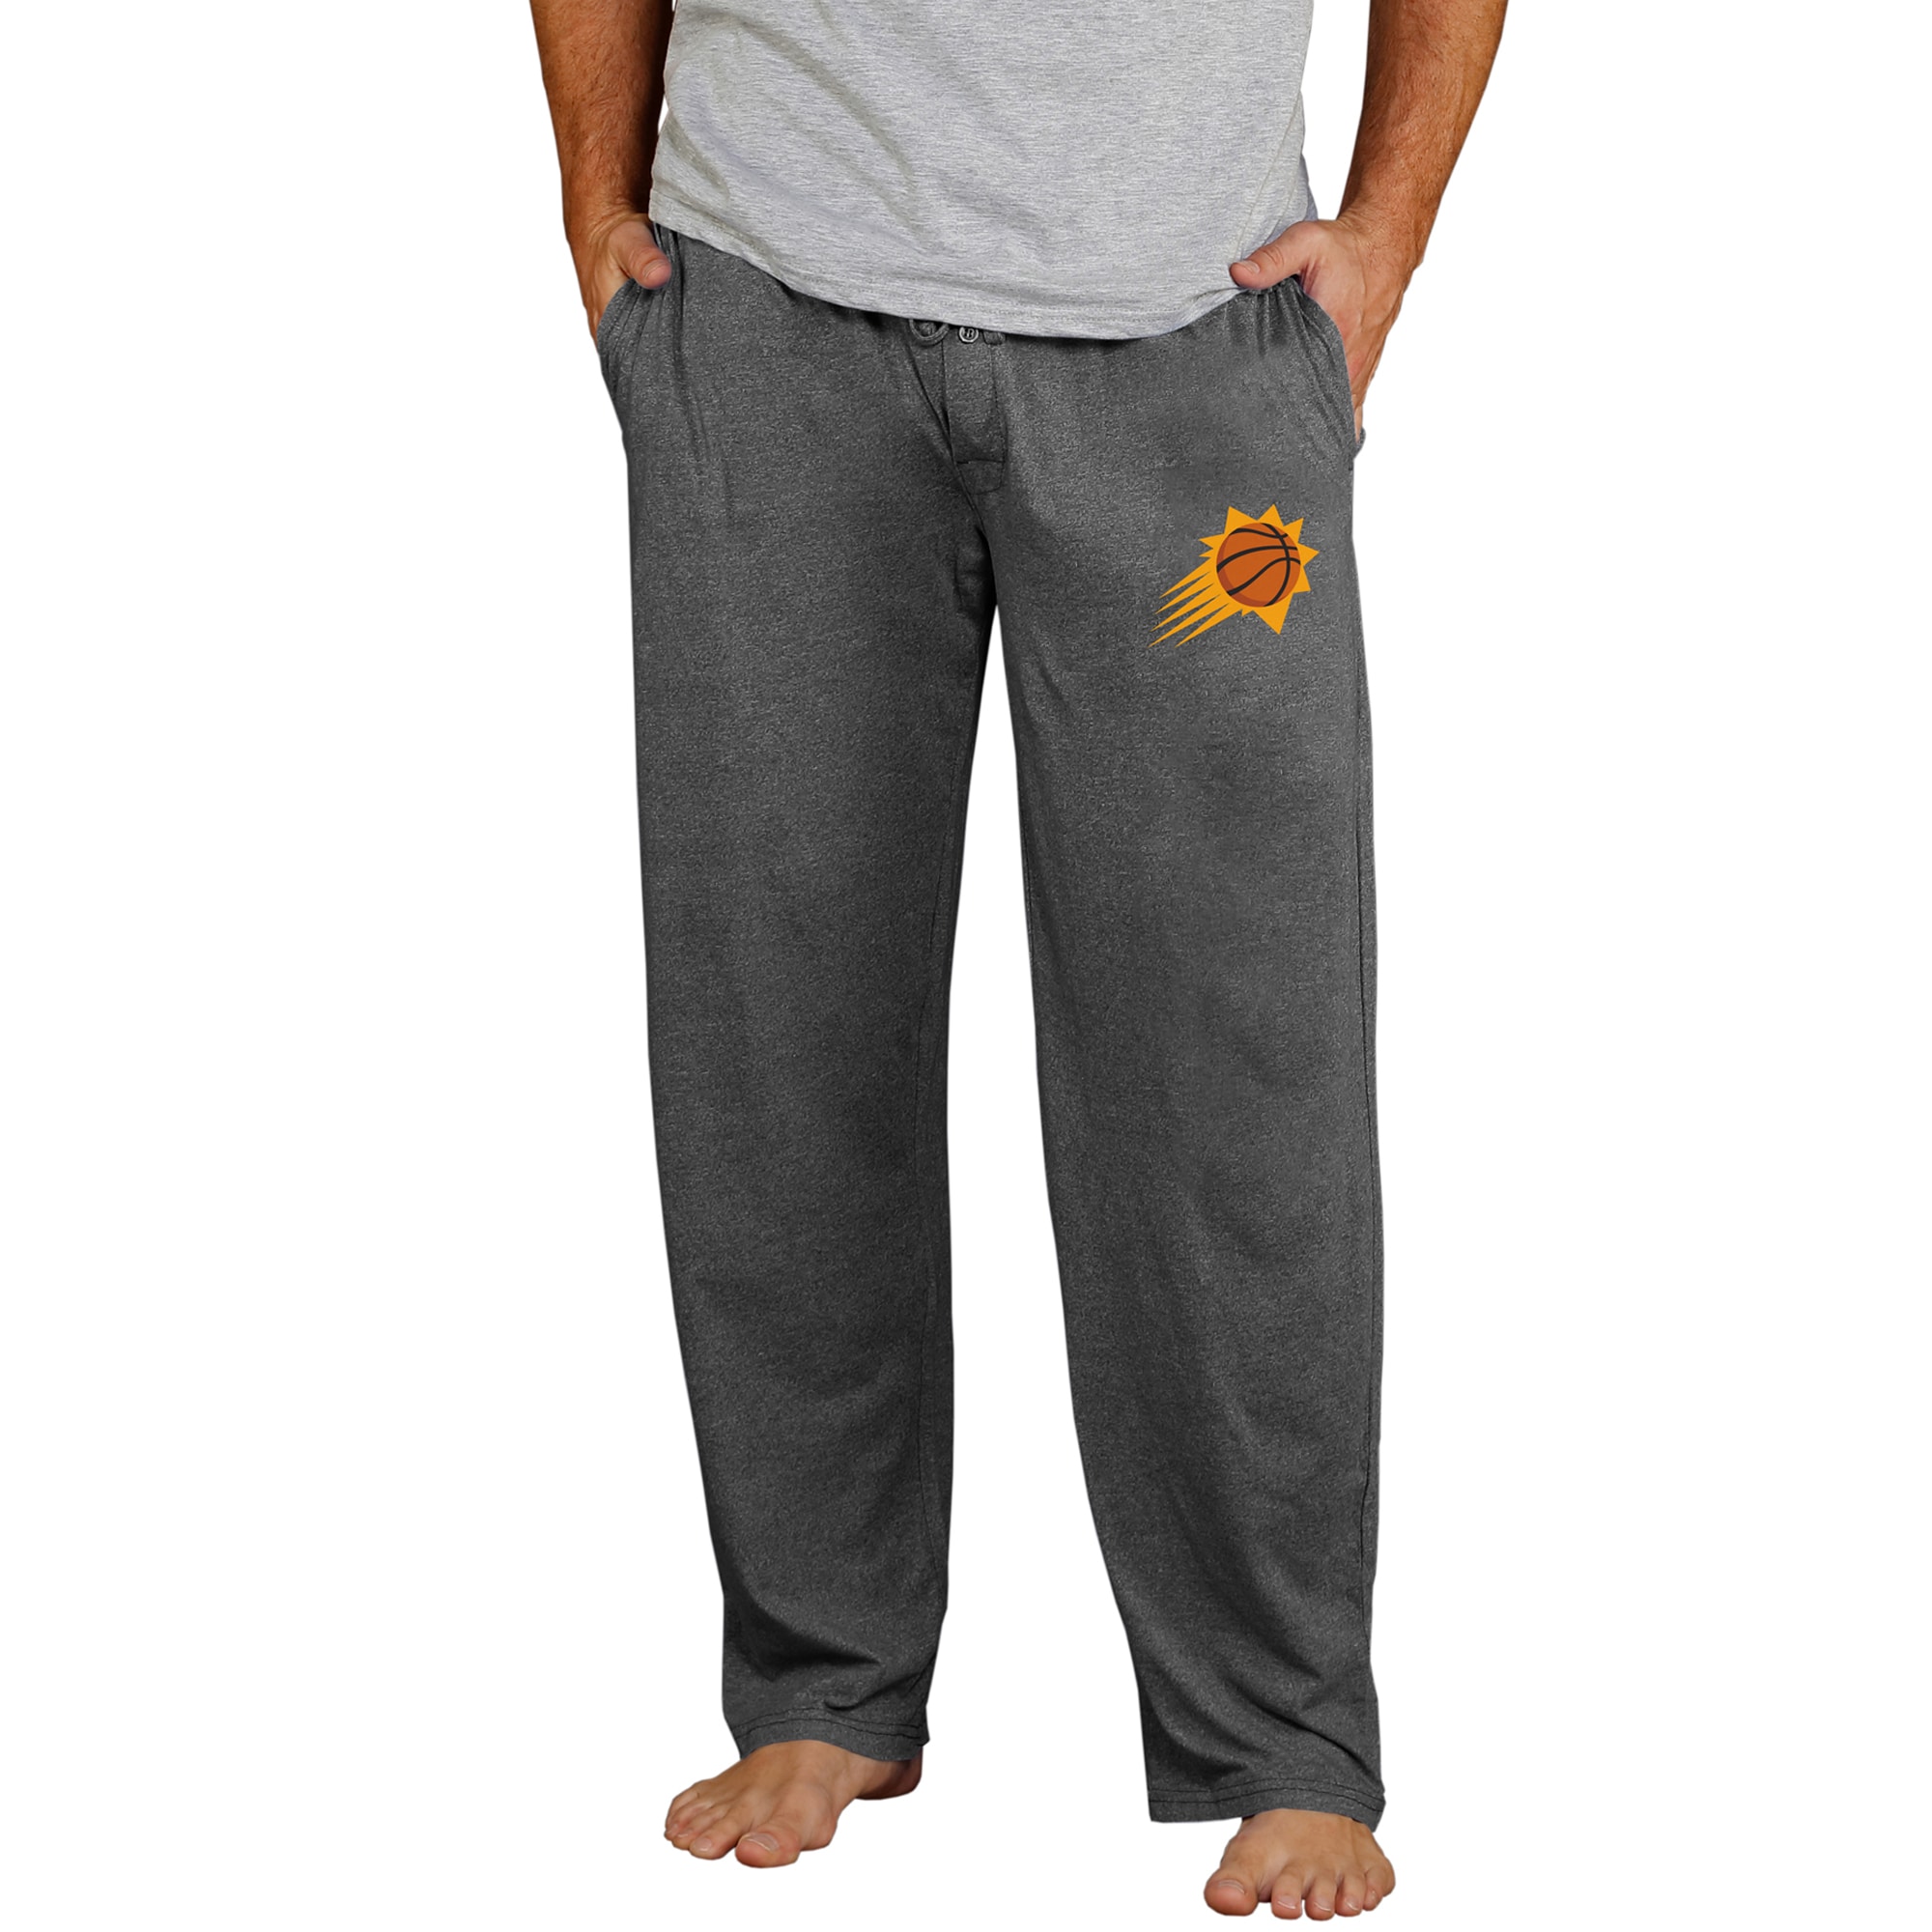 Men's Concepts Sport Charcoal Phoenix Suns Quest Knit Lounge Pants - image 1 of 1